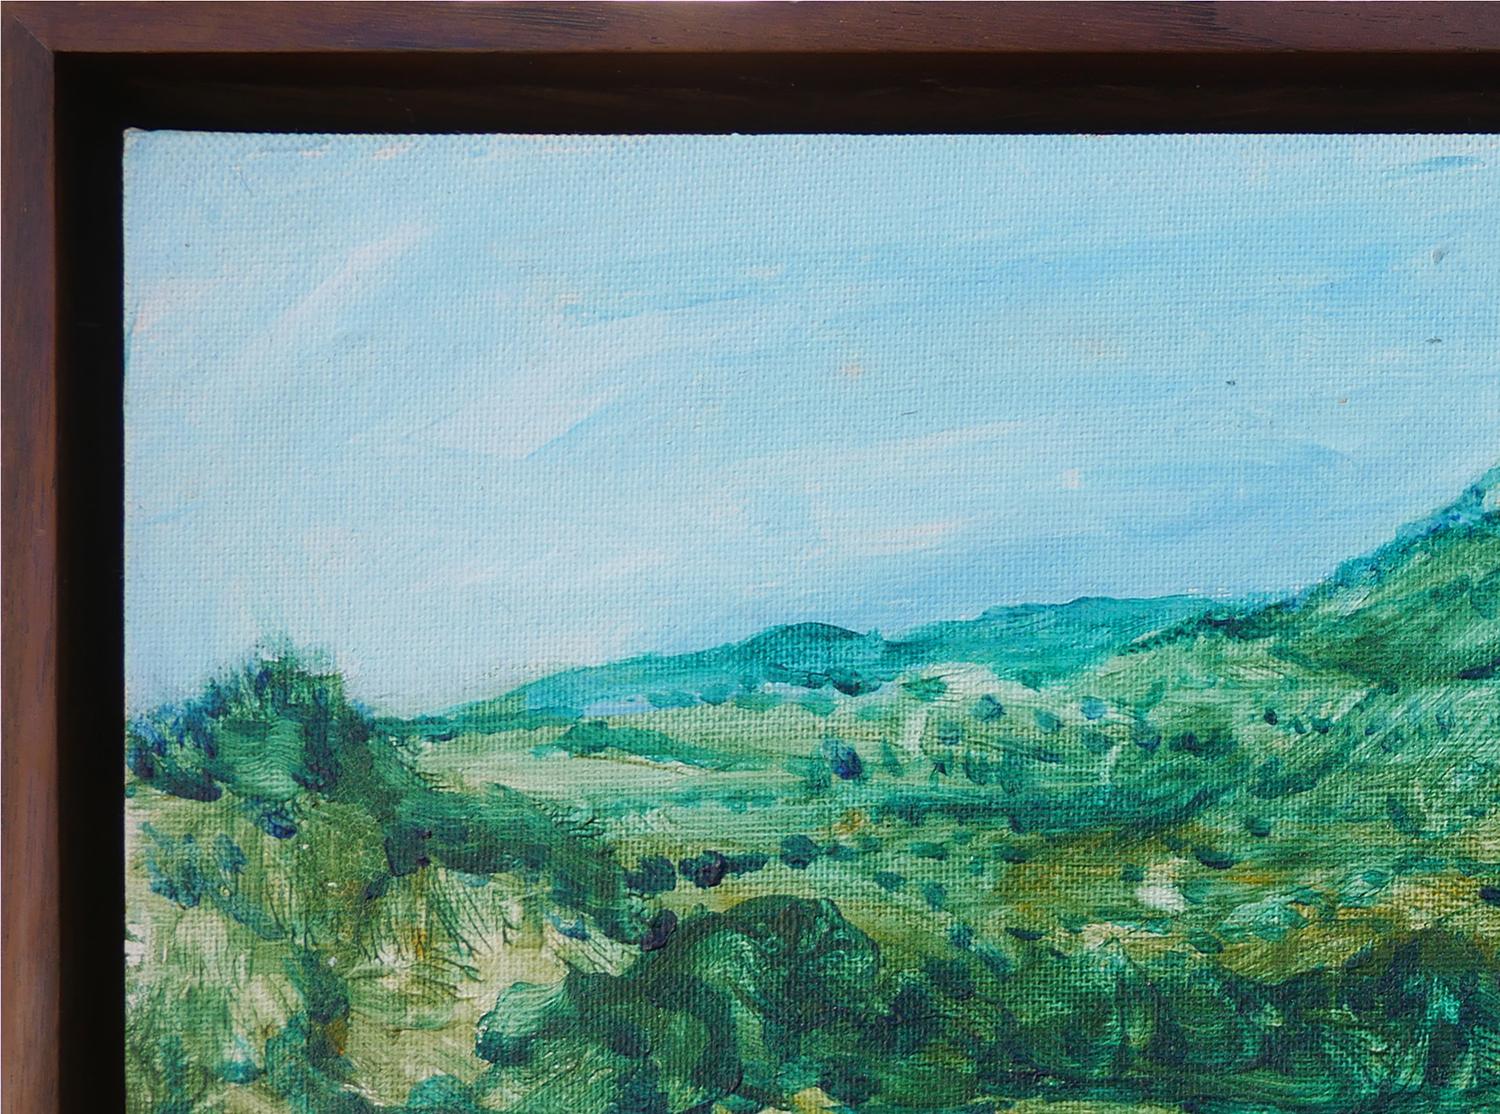 Modernes grünes und blau getöntes abstraktes impressionistisches Berglandschaftsgemälde (Abstrakter Impressionismus), Painting, von Earl Staley